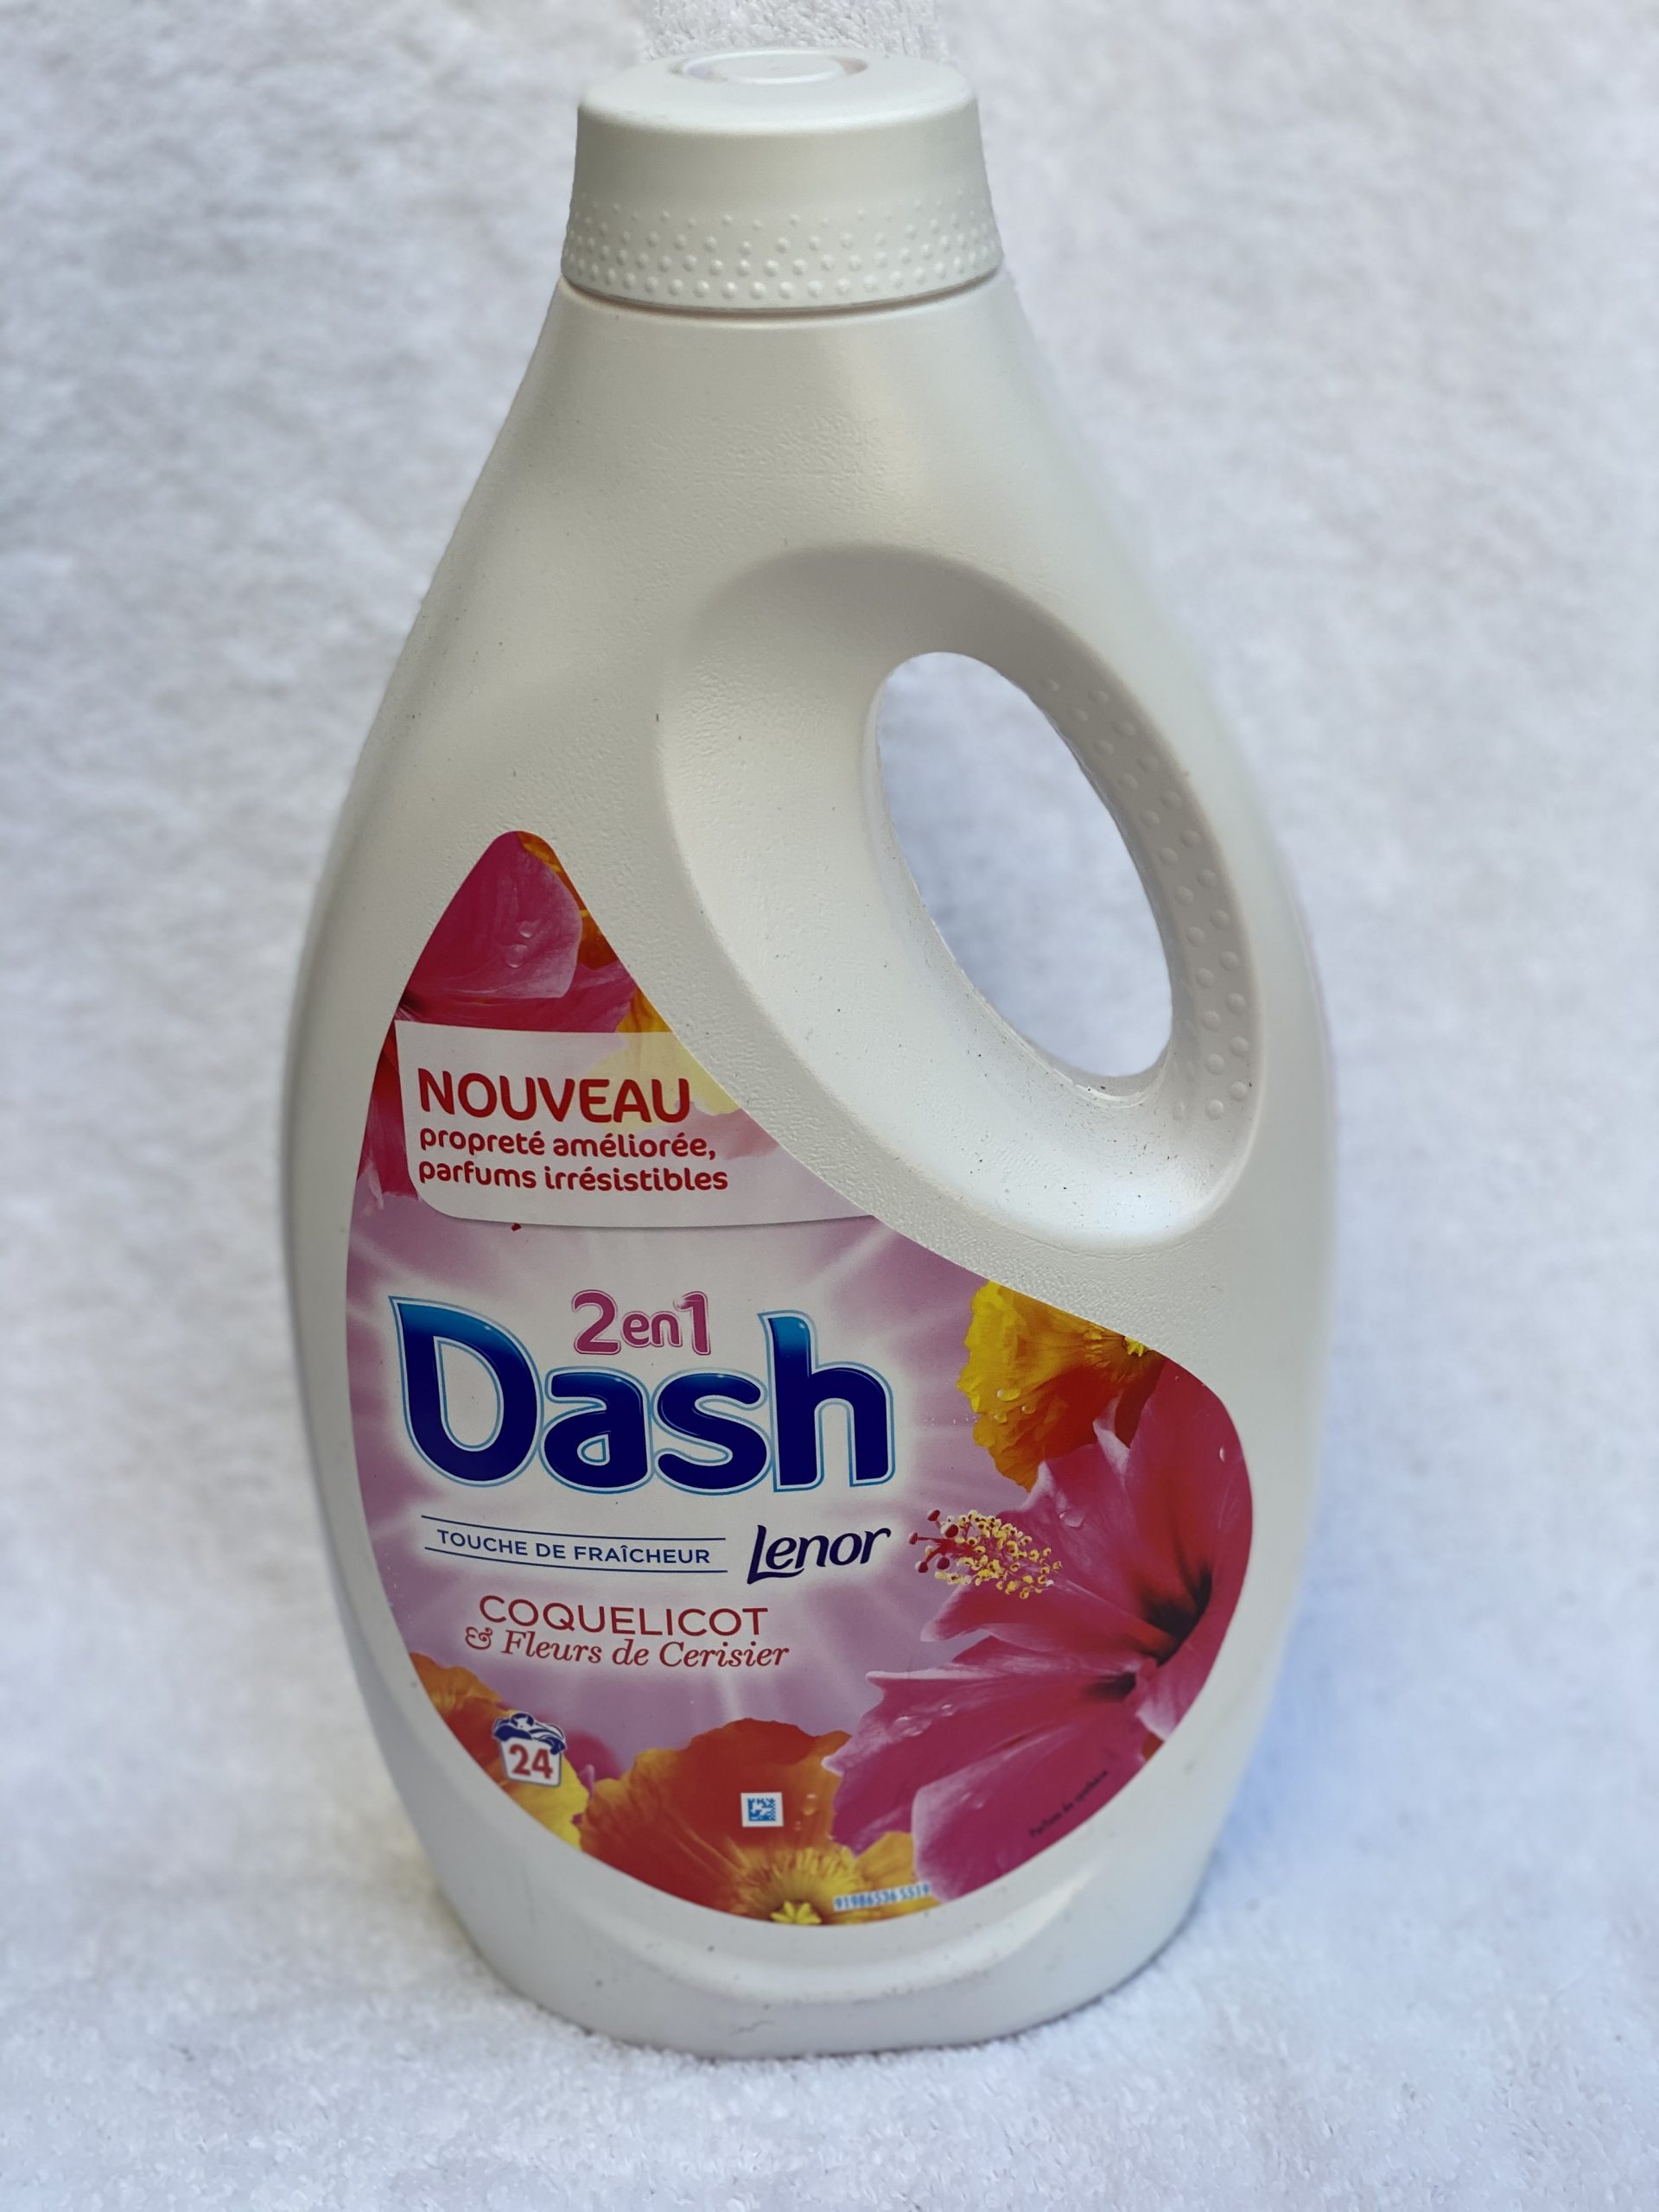 Dash 2 en 1 Touche de Fraîcheur Coquelicot & Fleurs de Cerisier - Lenor -  1495 ml (23 lavages)